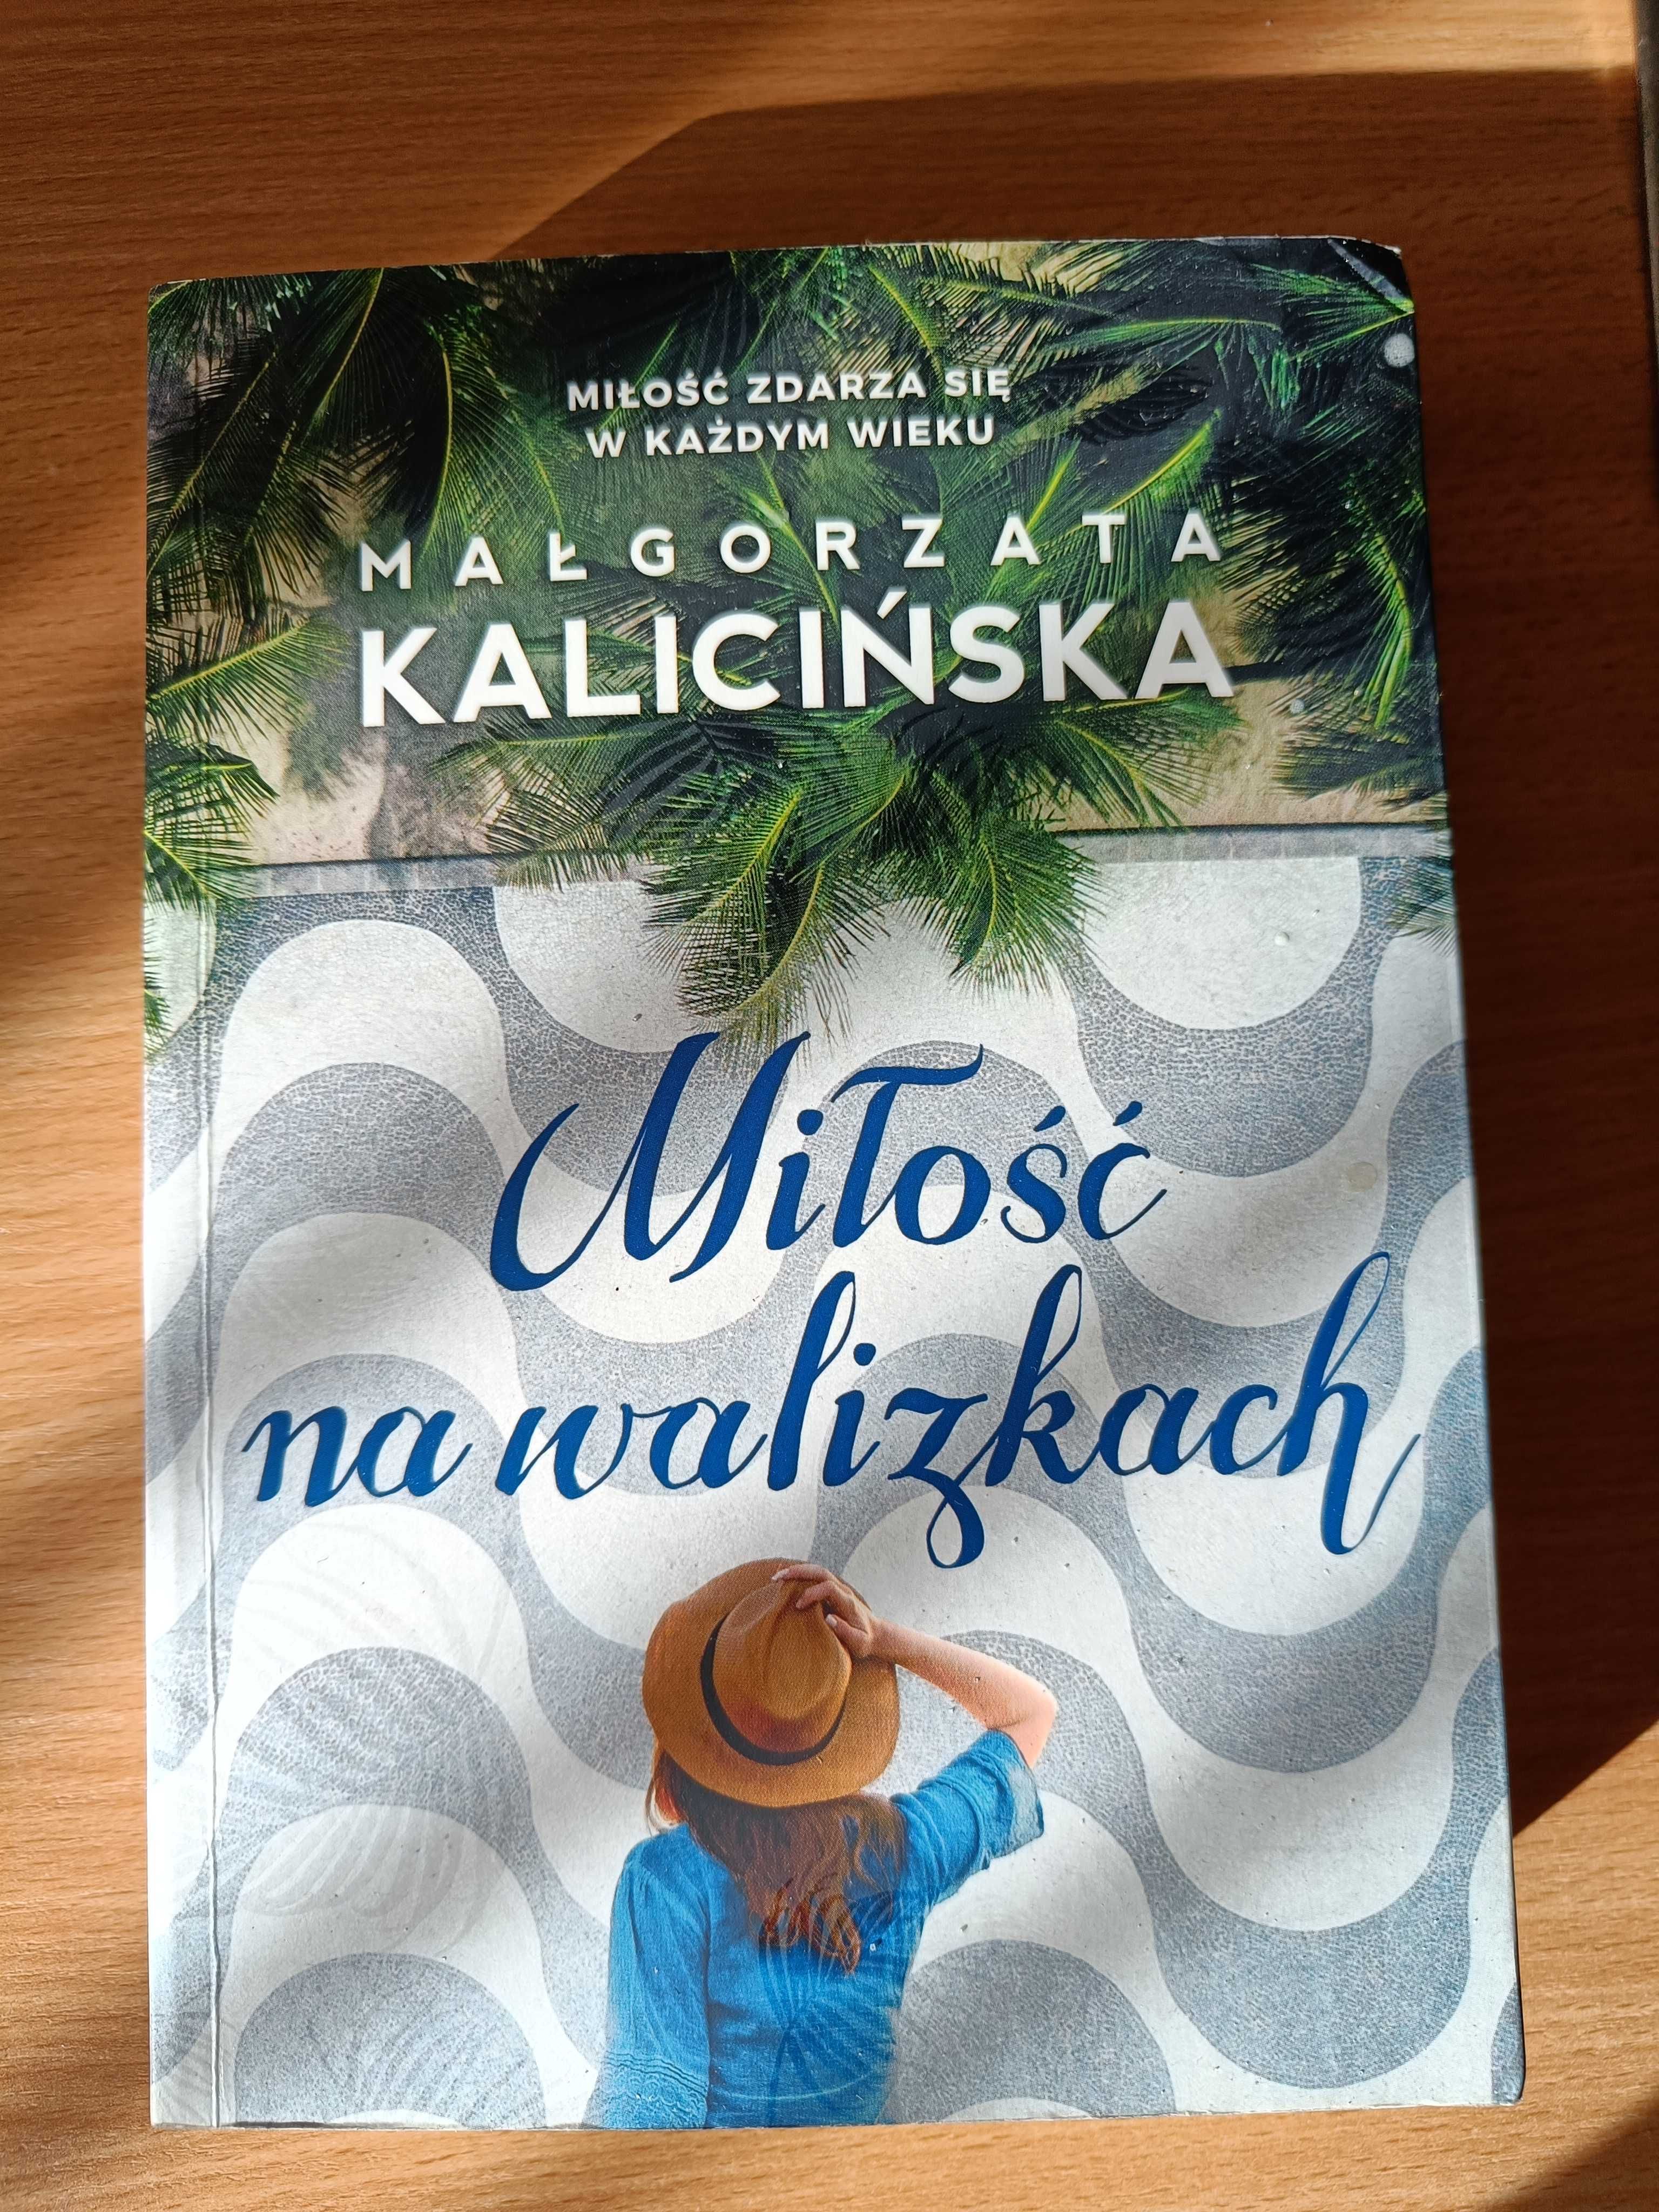 Miłość na walizkach Małgorzata Kalicińska